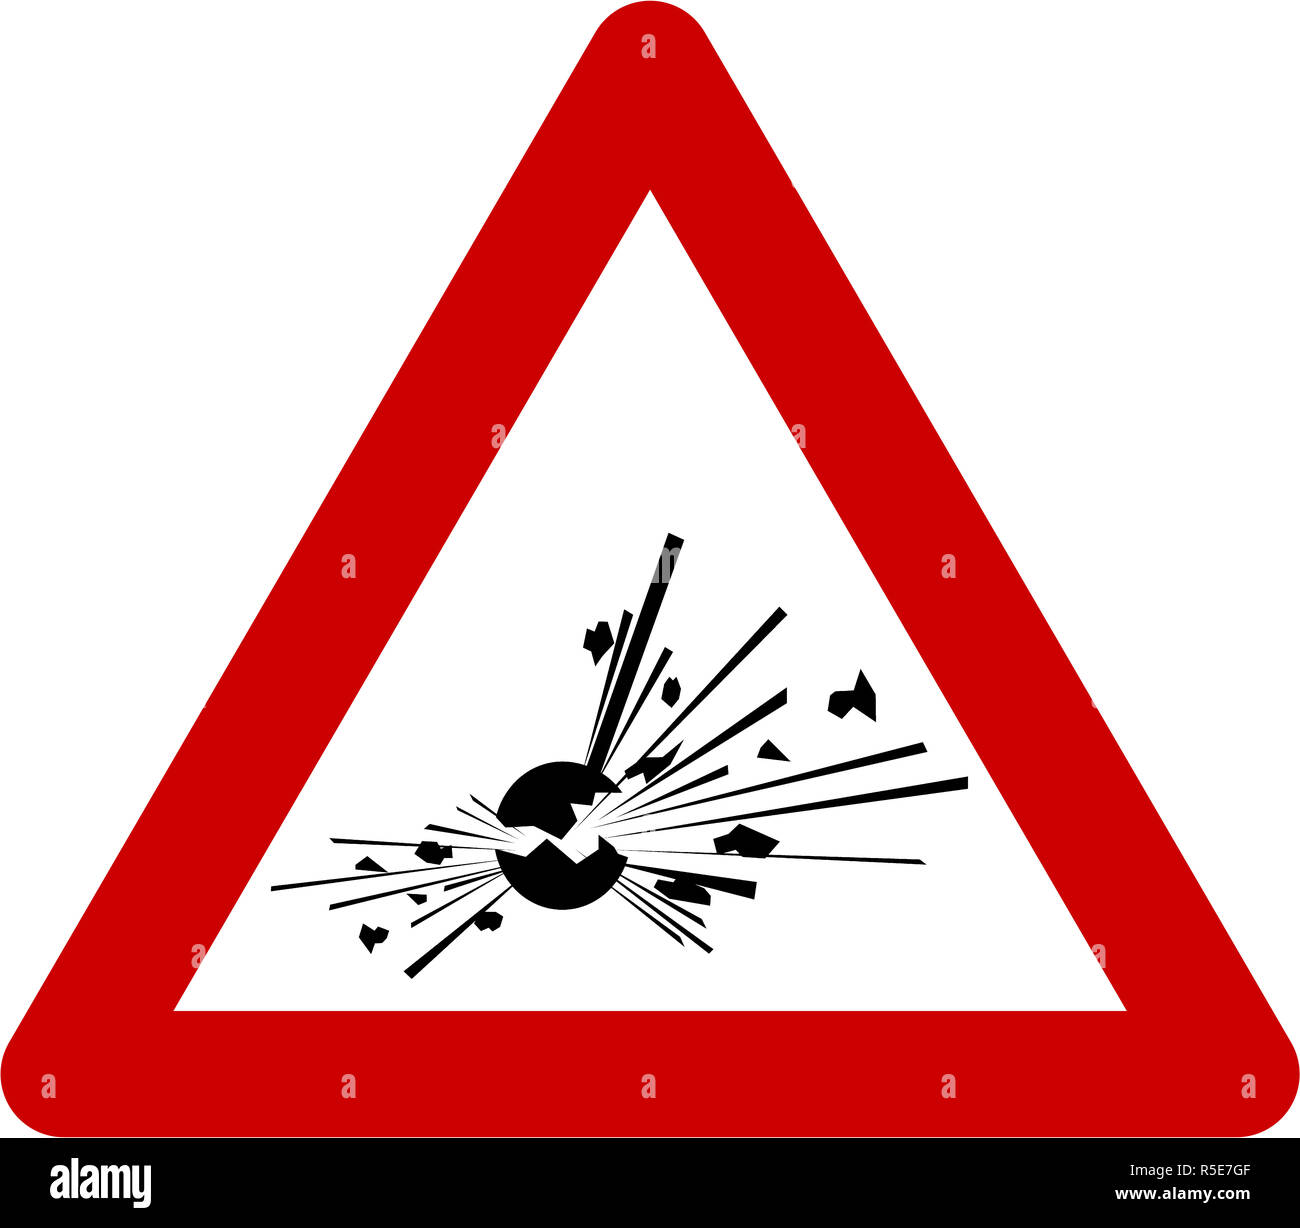 Warnschild mit explosiven Stoffen Symbol Stockfoto